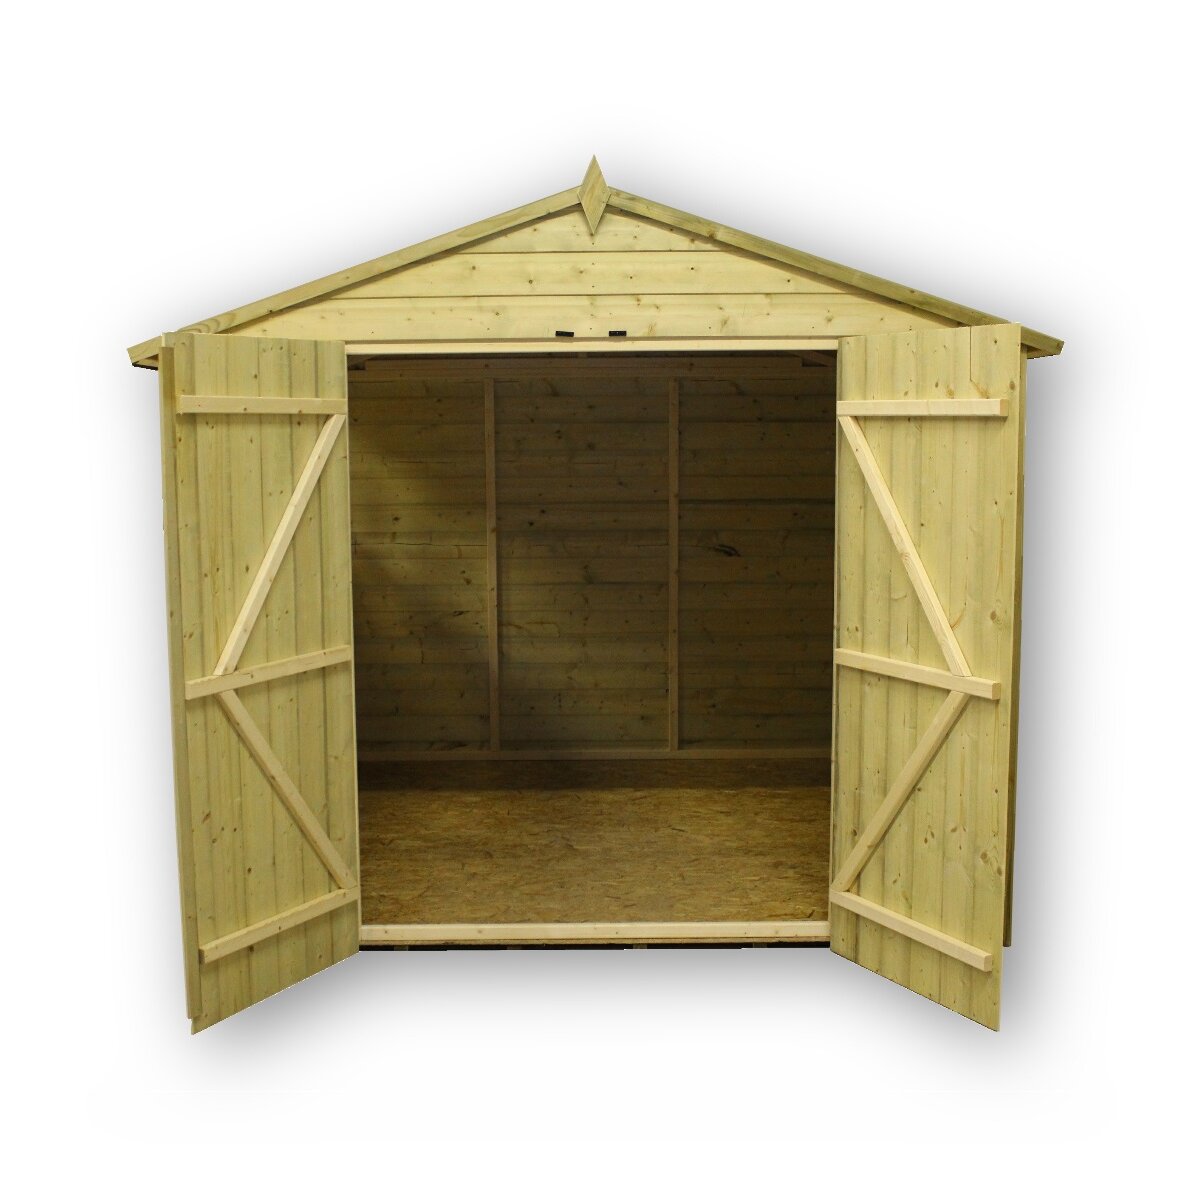 empire sheds ltd 8 x 8 wooden storage shed wayfair uk